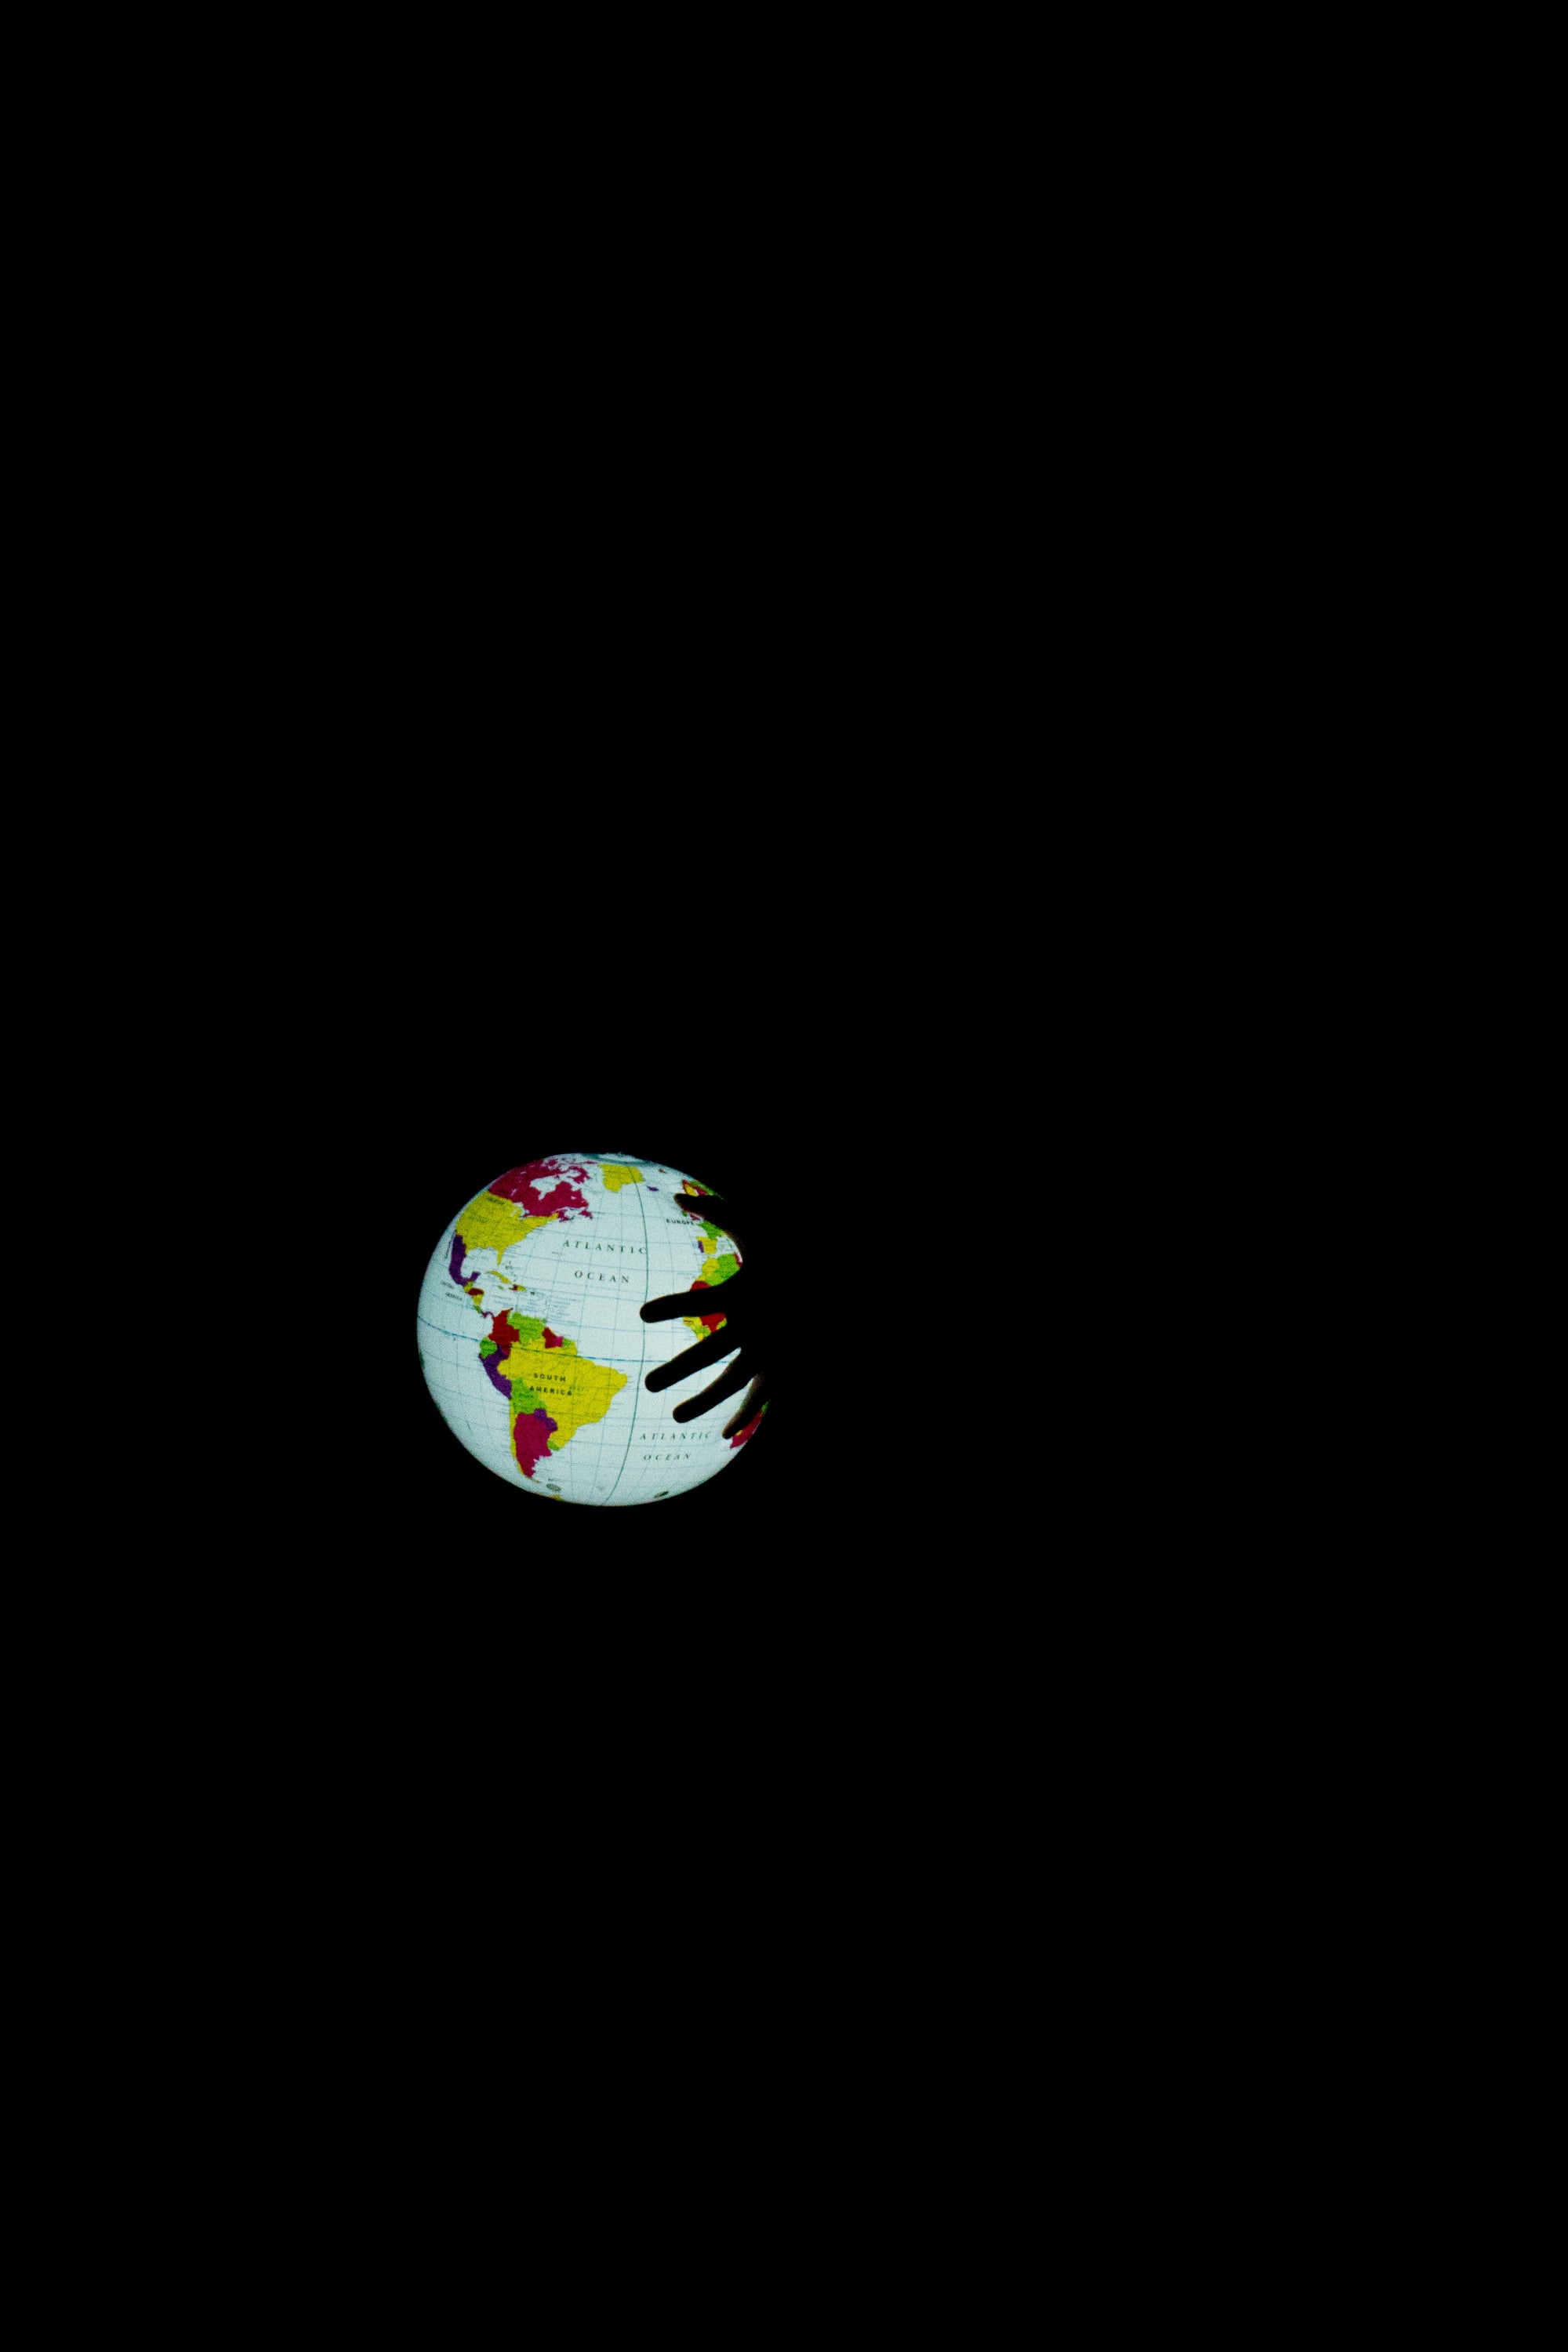 The Glowing Globe